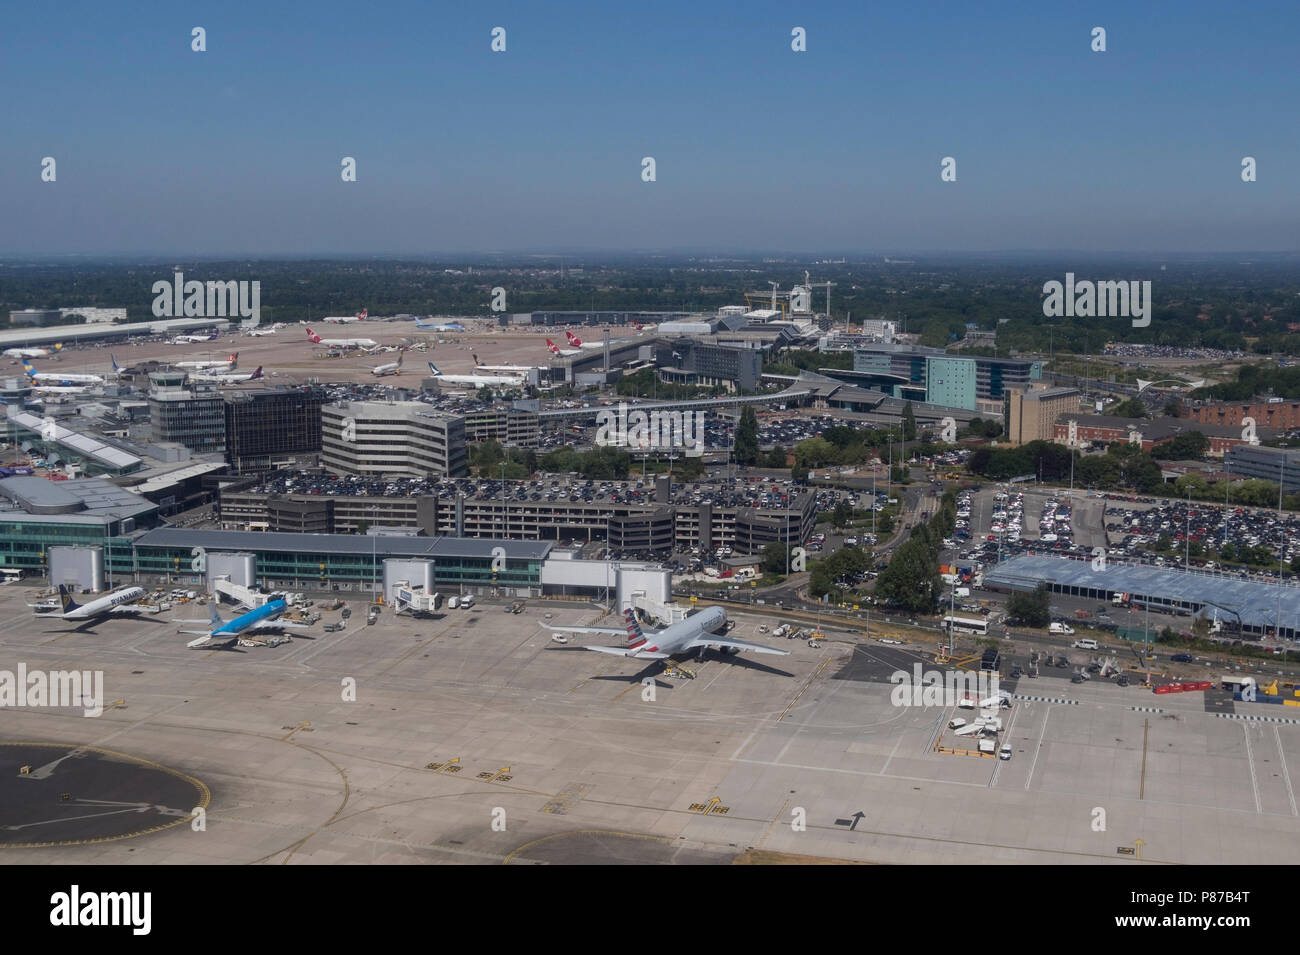 Une vue aérienne de l'aéroport de Manchester. Banque D'Images